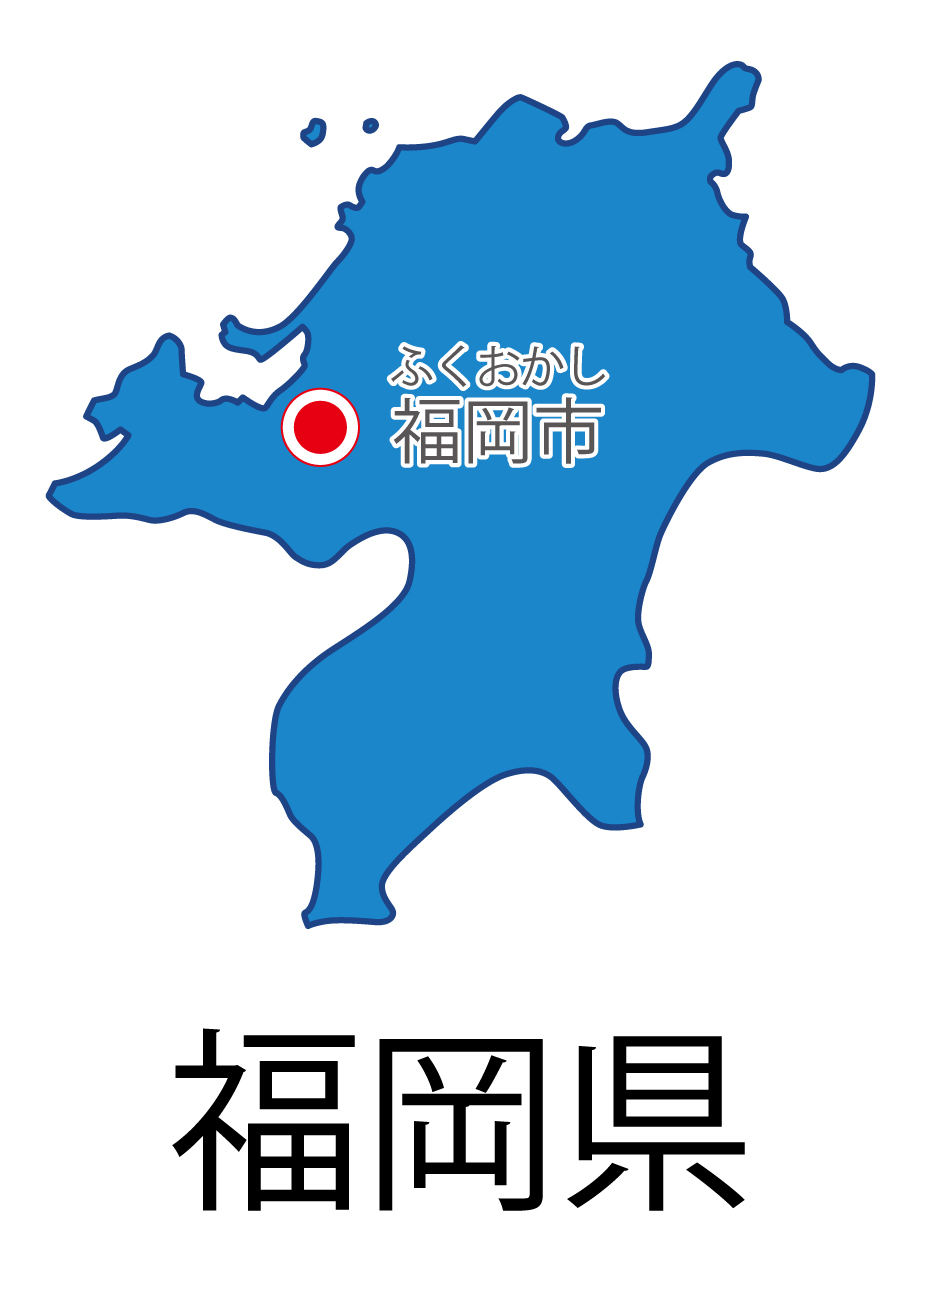 福岡県の地図イラスト フリー素材 を無料ダウンロード